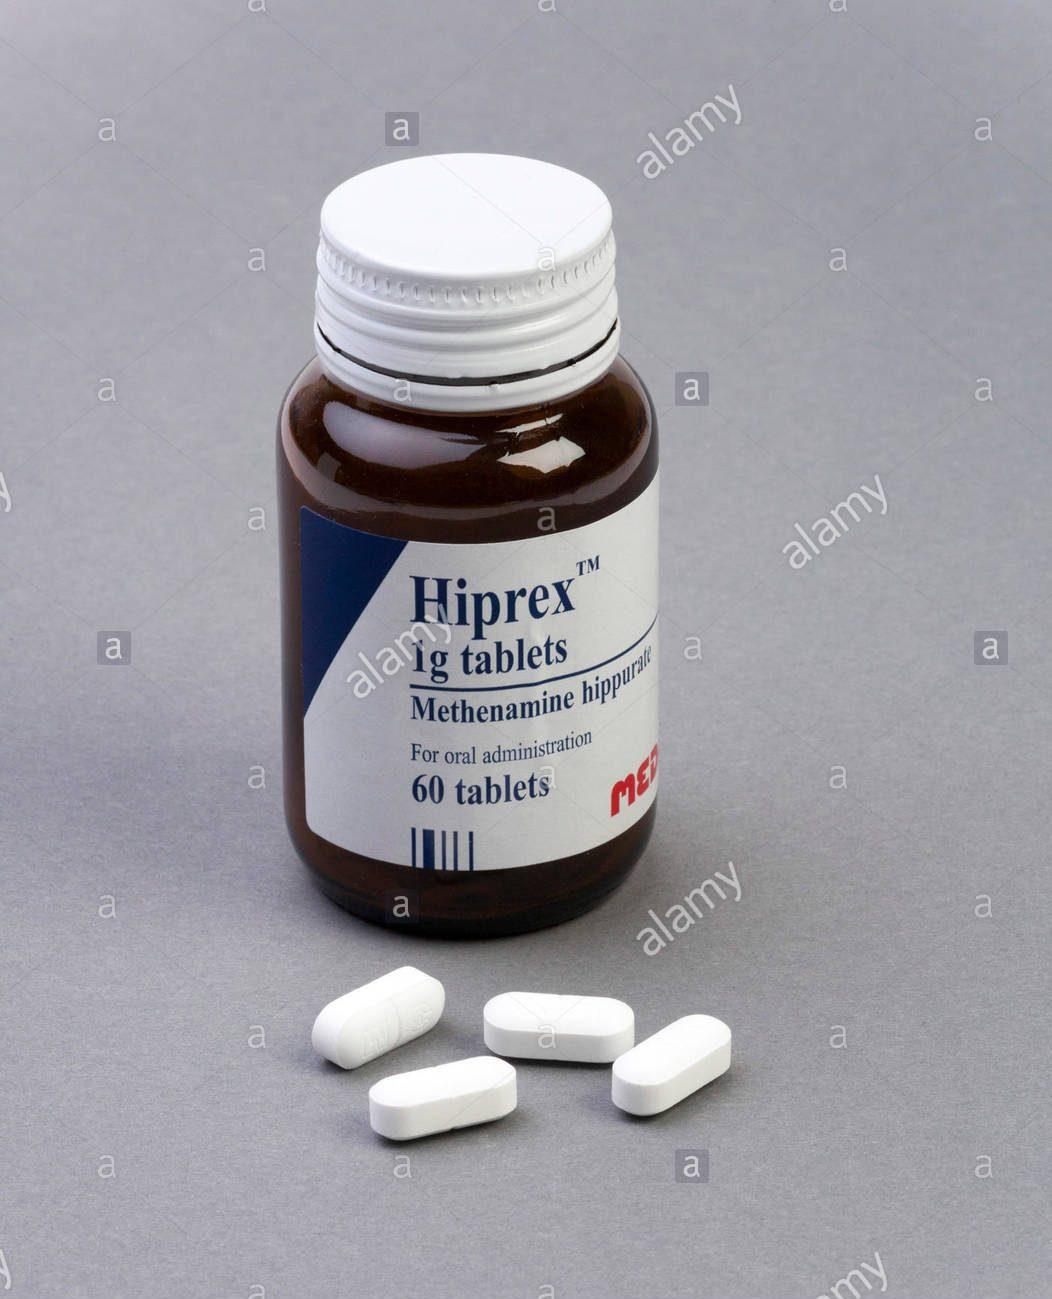 hiprex-methenamine-tablets-made-by-meda-ab-FATDH3-e1633595792553.jpg